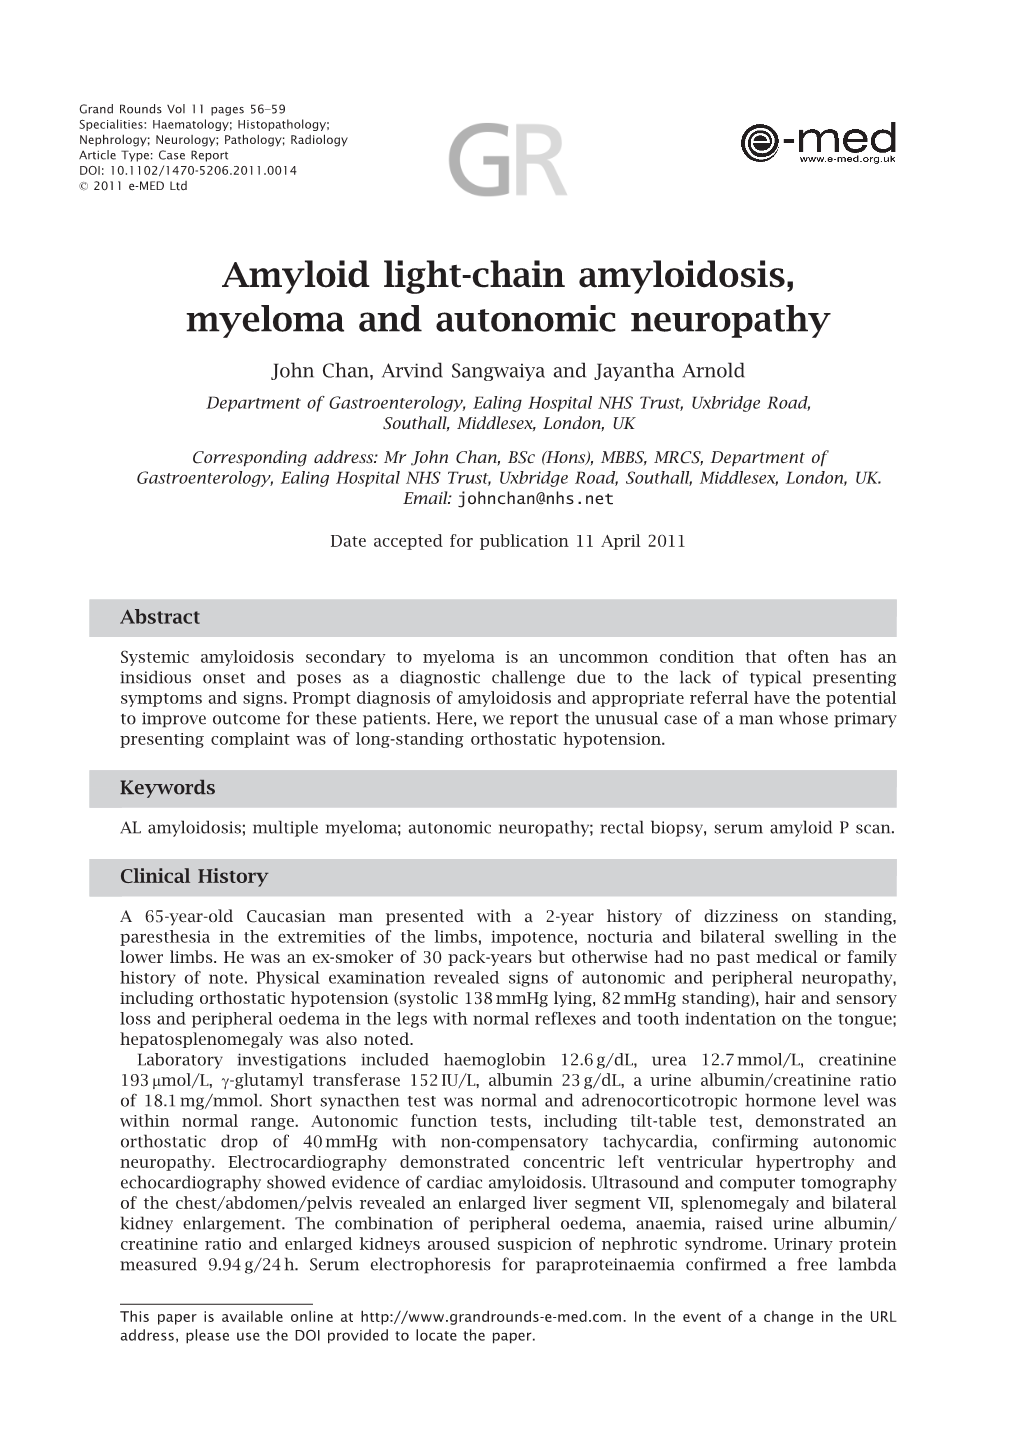 Amyloid Light-Chain Amyloidosis, Myeloma and Autonomic Neuropathy